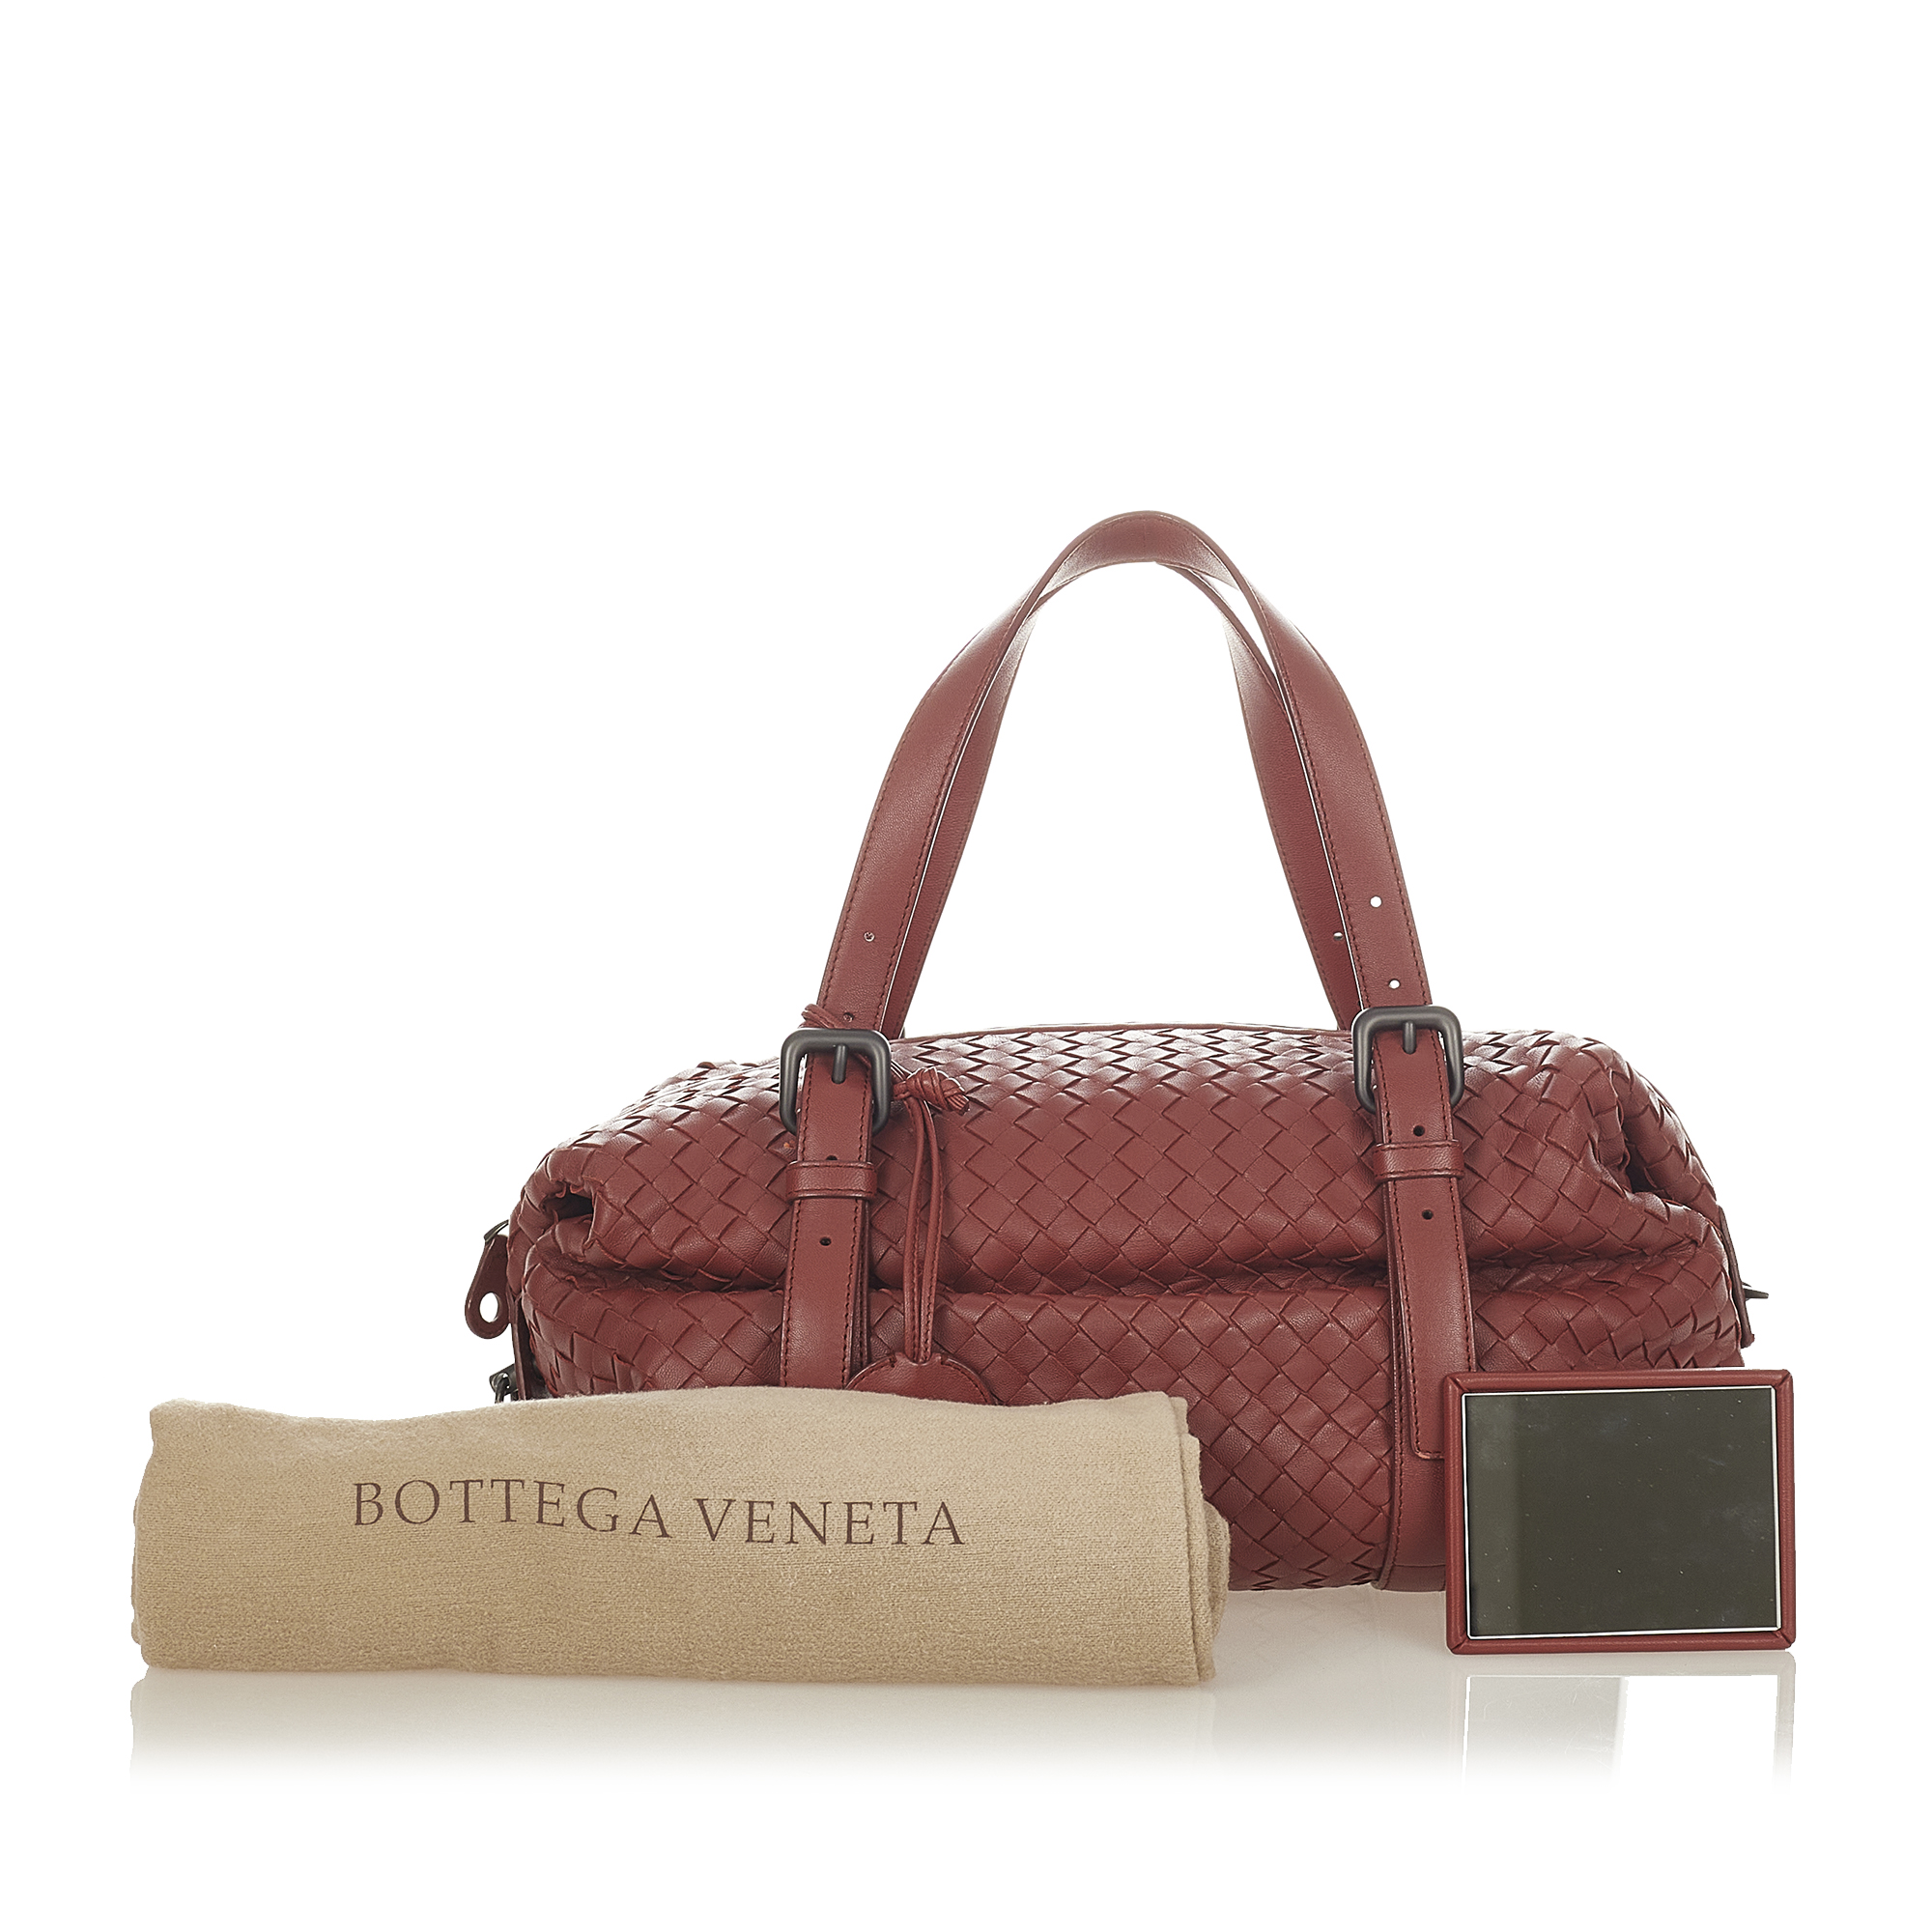 Bottega Veneta Intrecciato Leather Handbag - Image 11 of 11